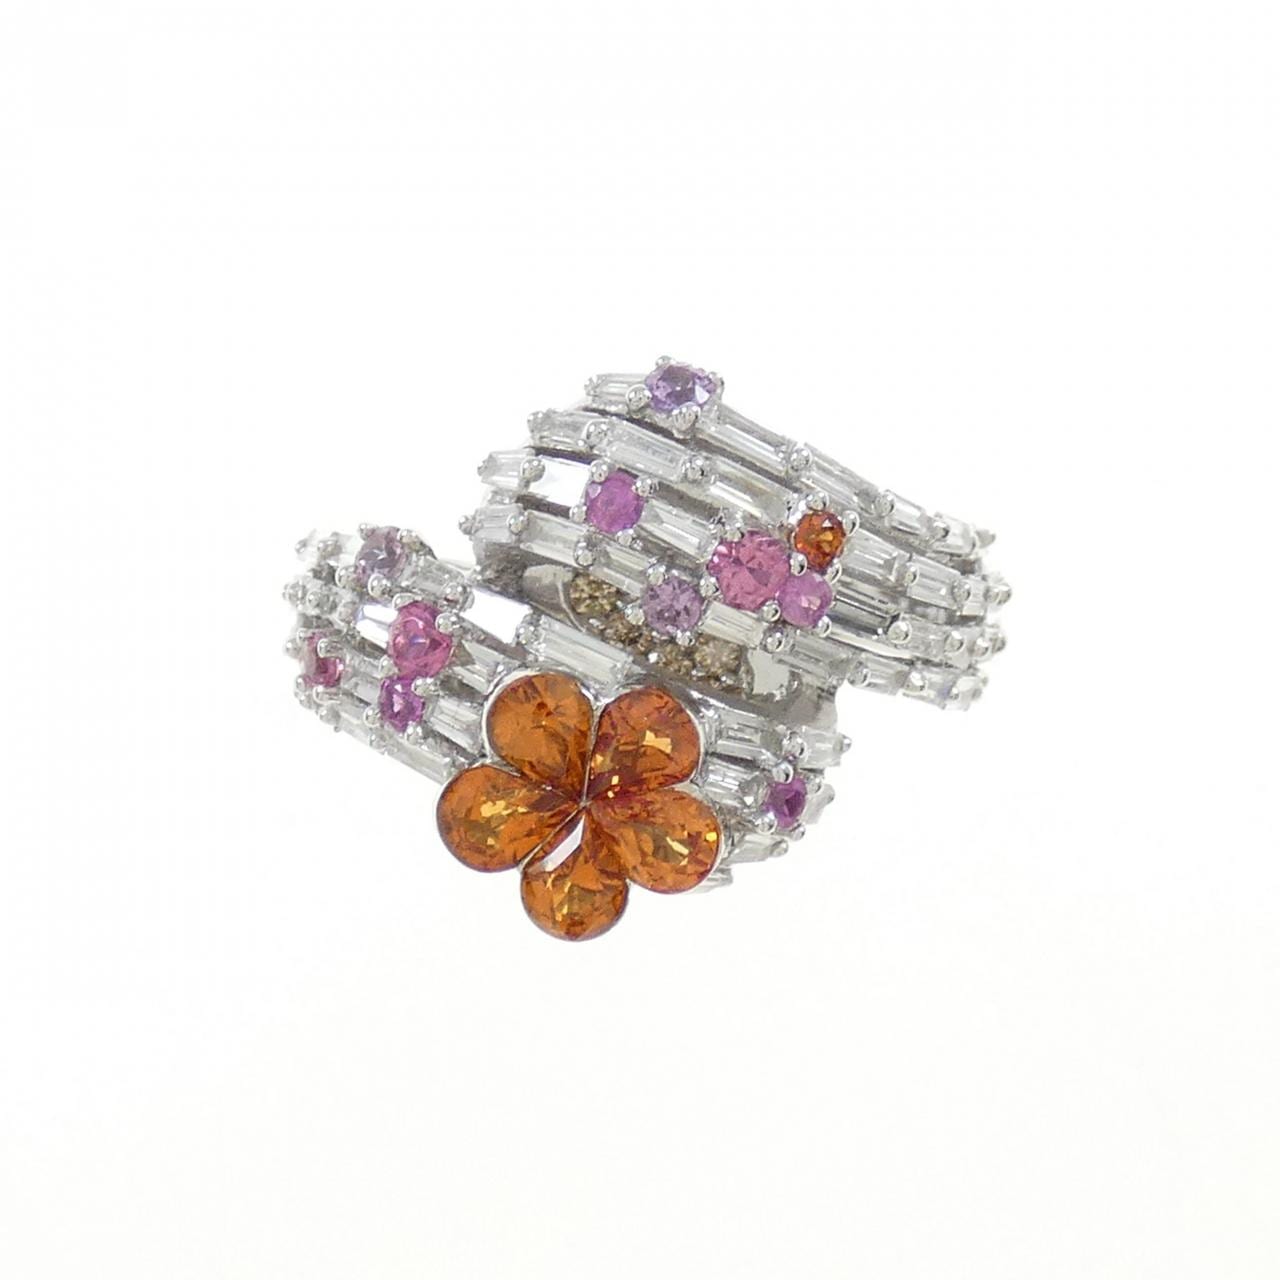 K18WG flower sapphire ring